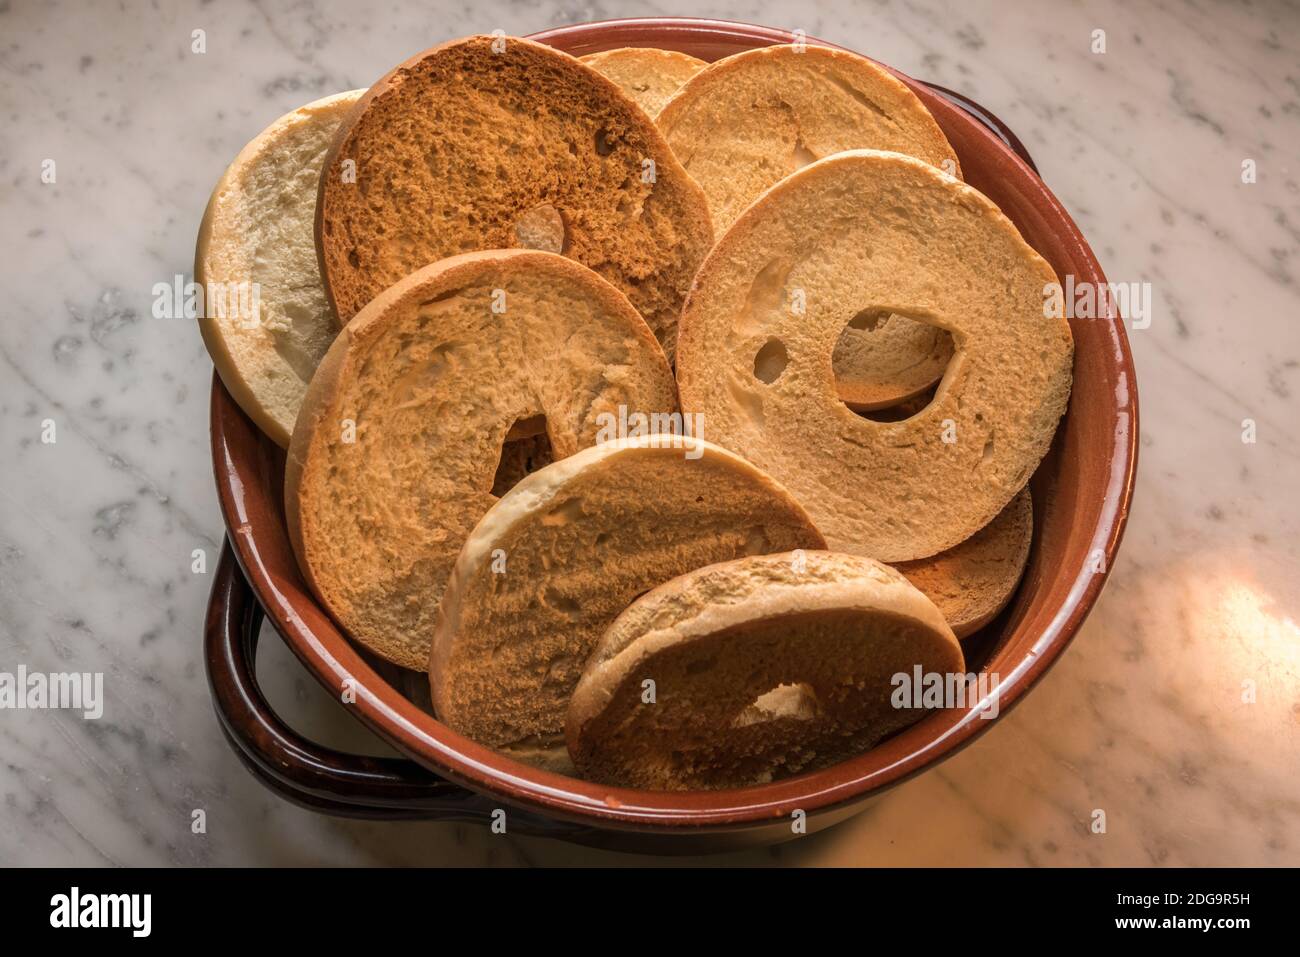 Friselle in Steinguttopf, typisch italienisches Donut-Brot aus  Hartweizenmehl und im Ofen geröstet. Ideal für einen Aperitif mit tomat  Stockfotografie - Alamy